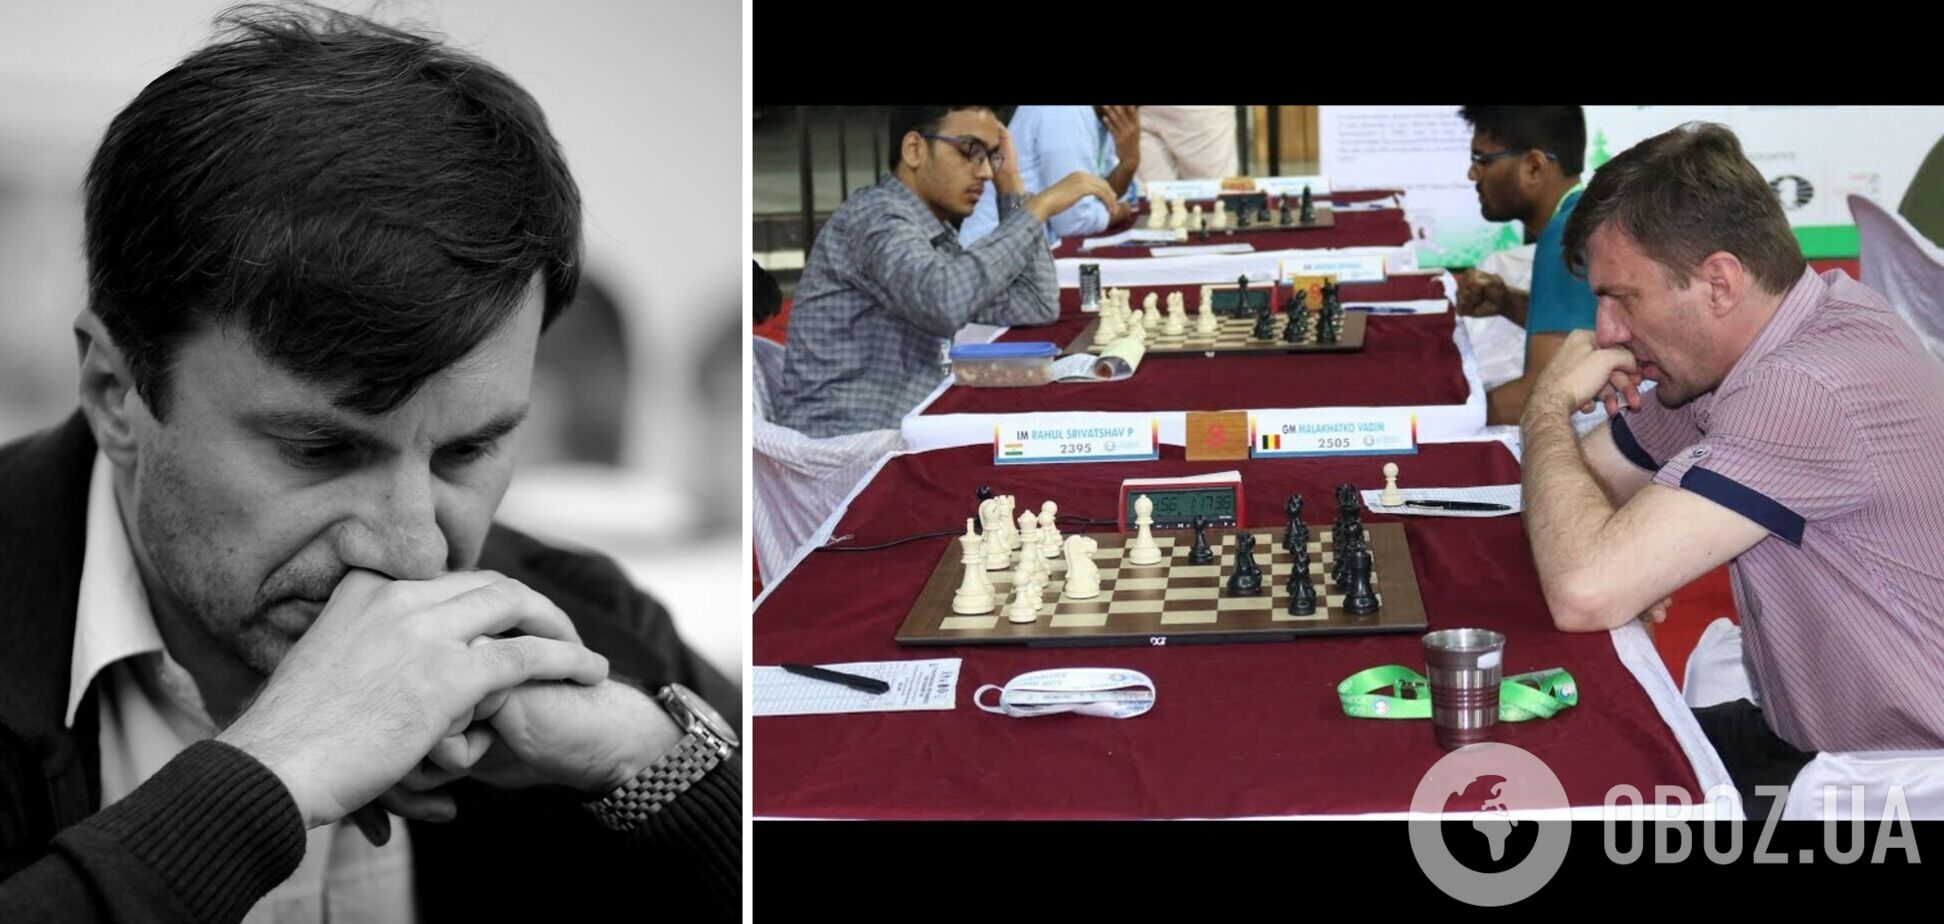 Сменивший гражданство украинский чемпион мира по шахматам внезапно умер в 46 лет